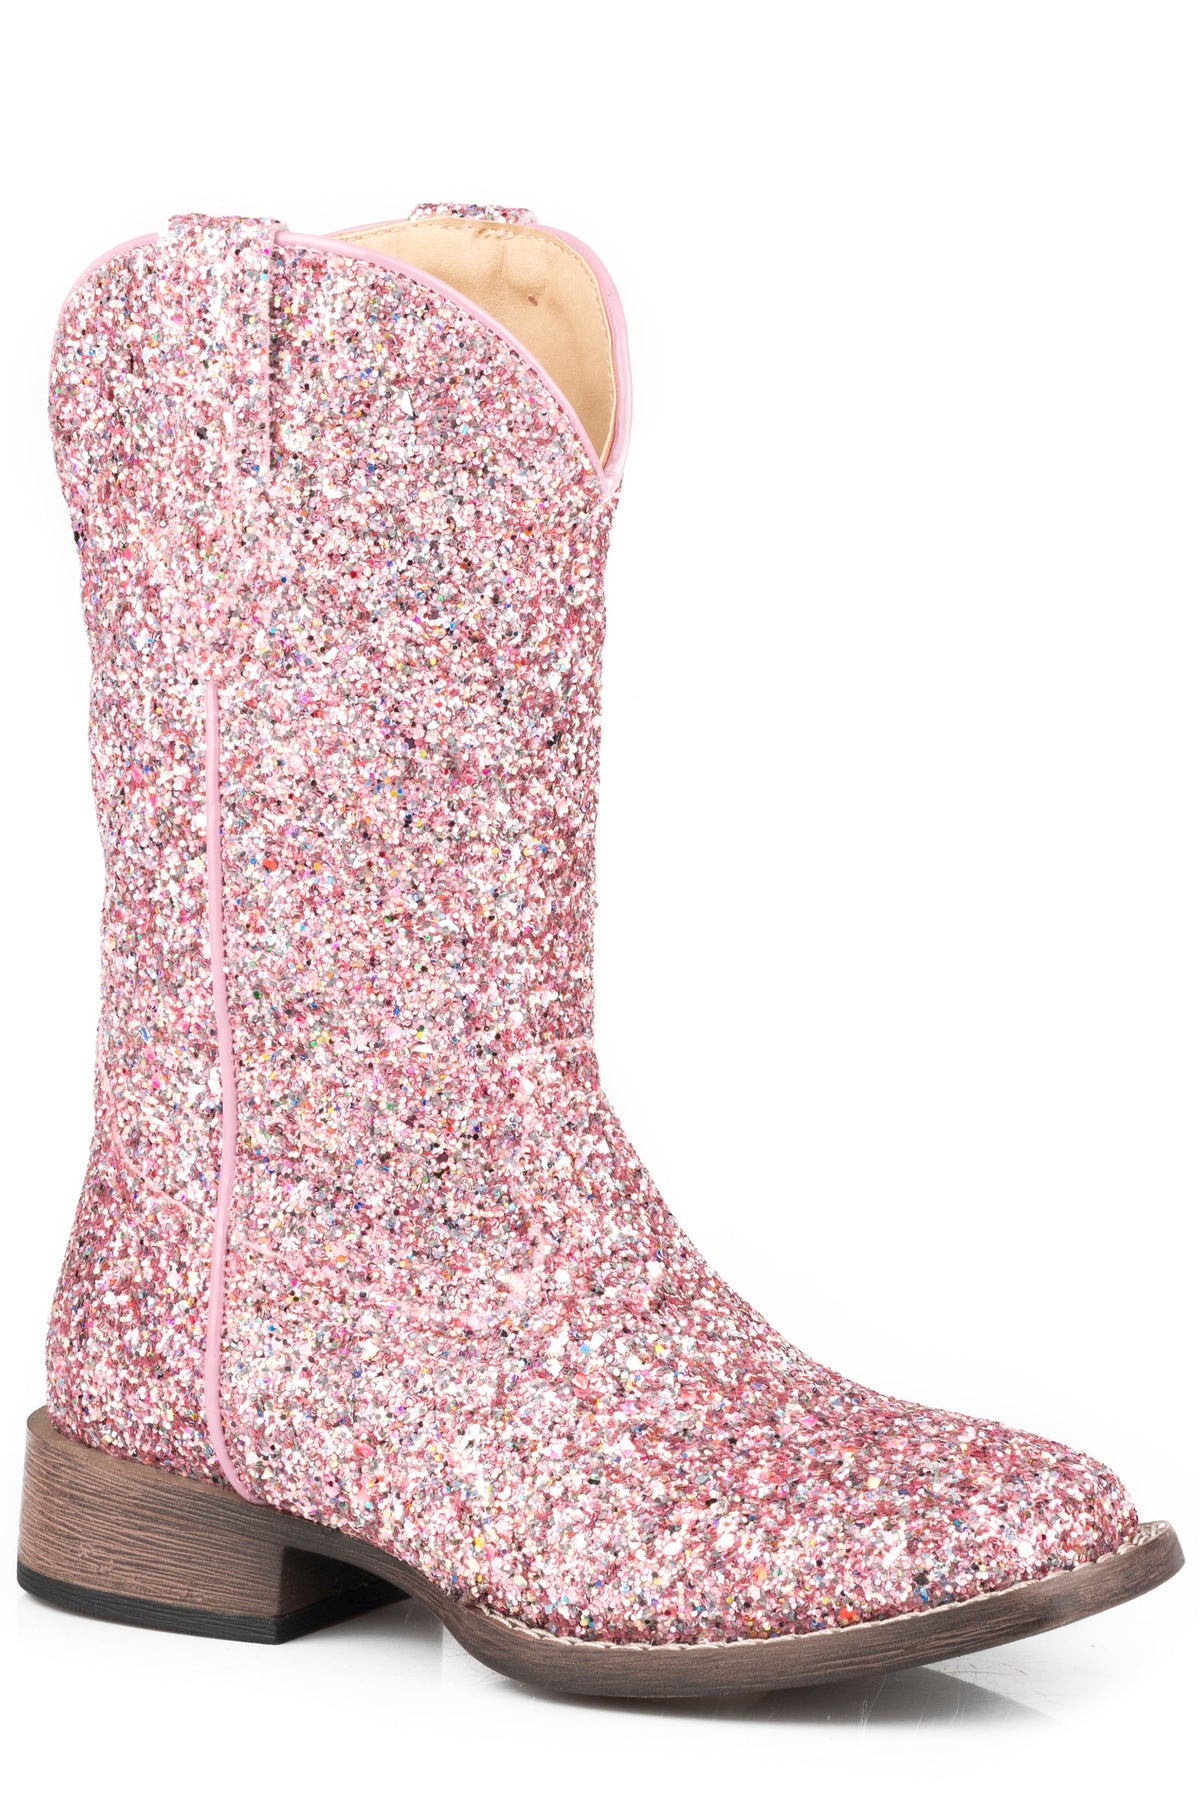 Roper Little Girls Pink Multi Glitter Vamp  Shaft Boot